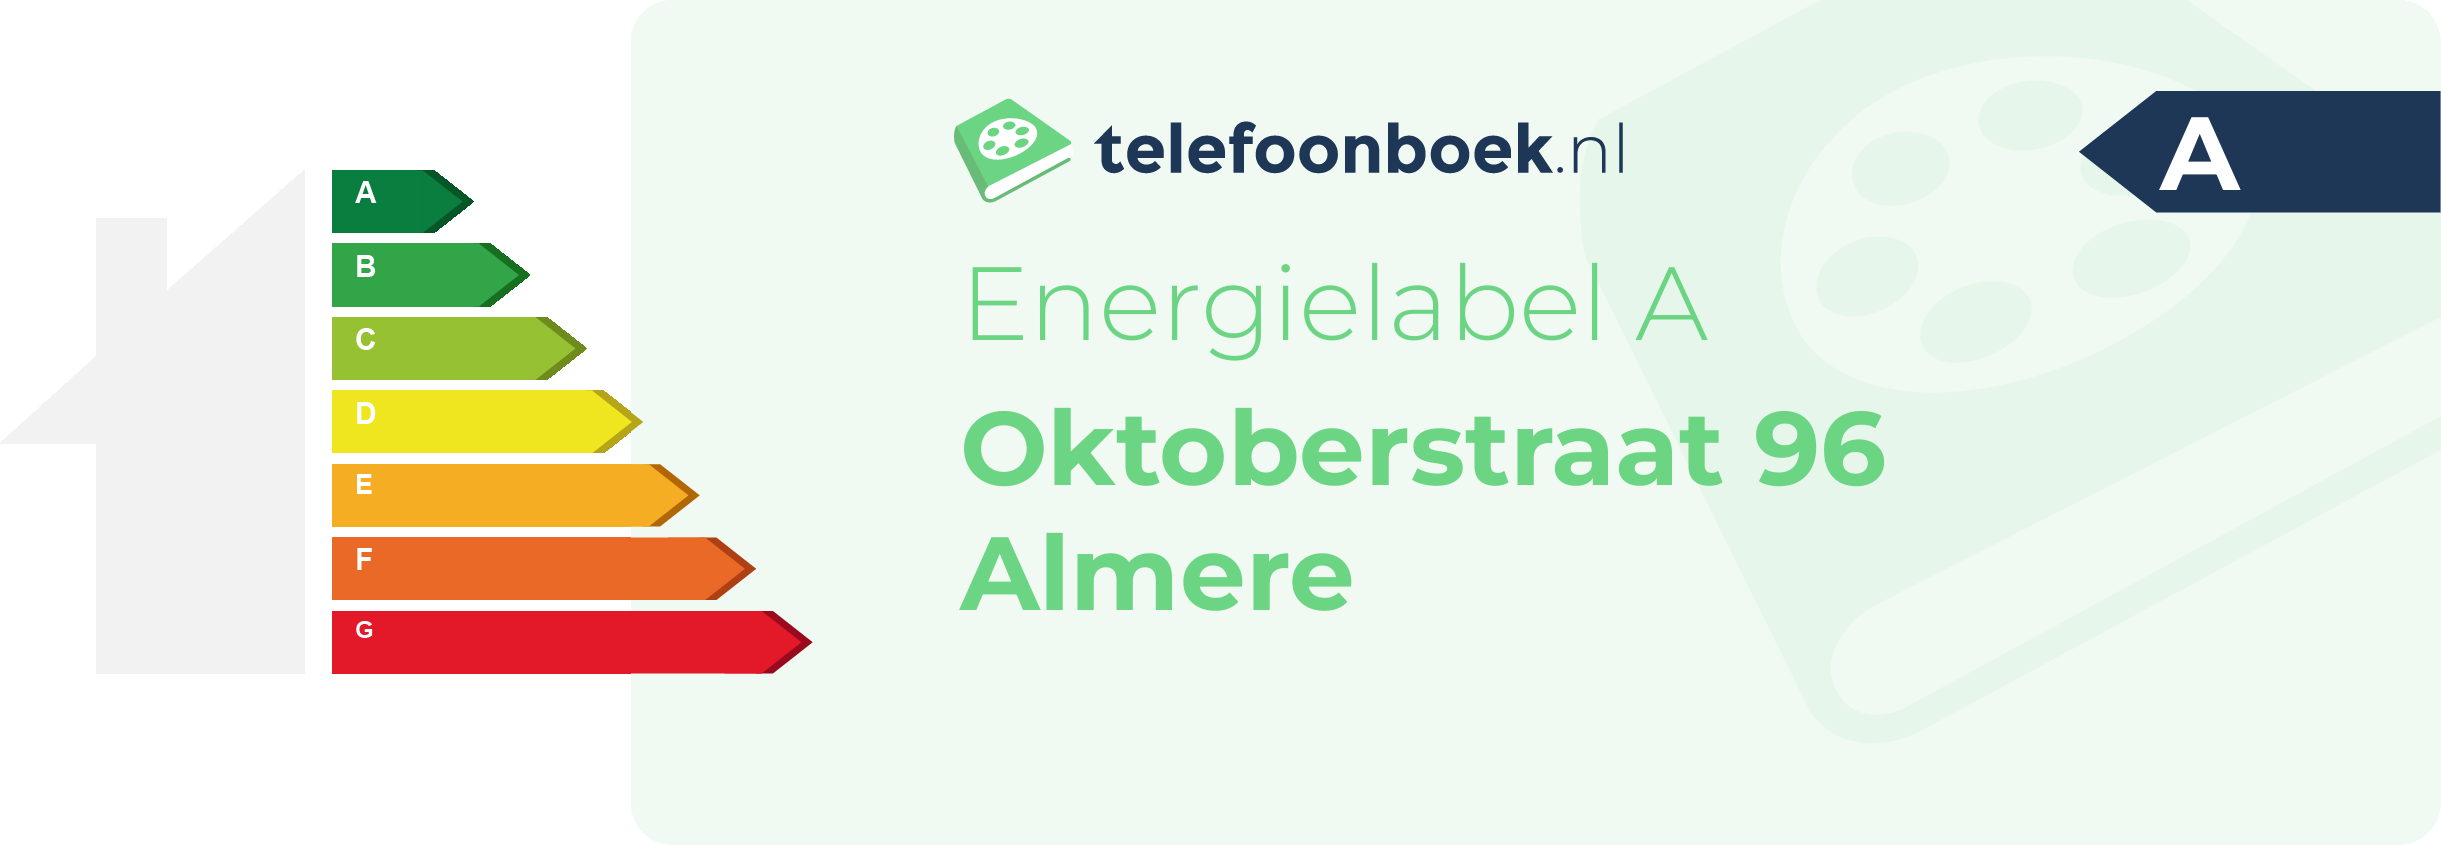 Energielabel Oktoberstraat 96 Almere